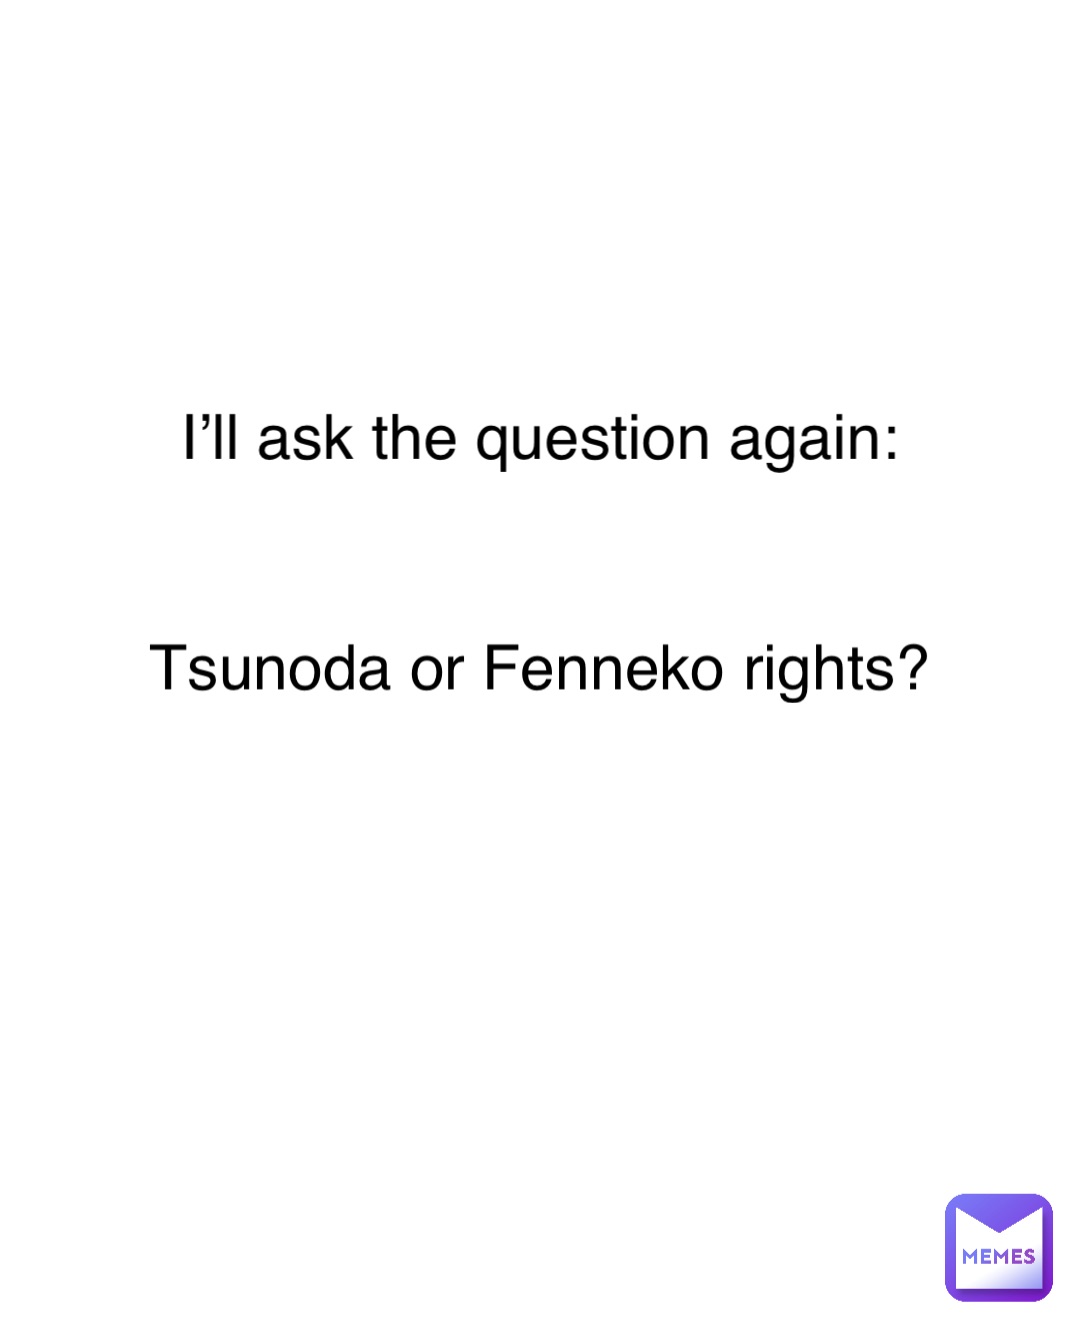 I’ll ask the question again: Tsunoda or Fenneko rights?